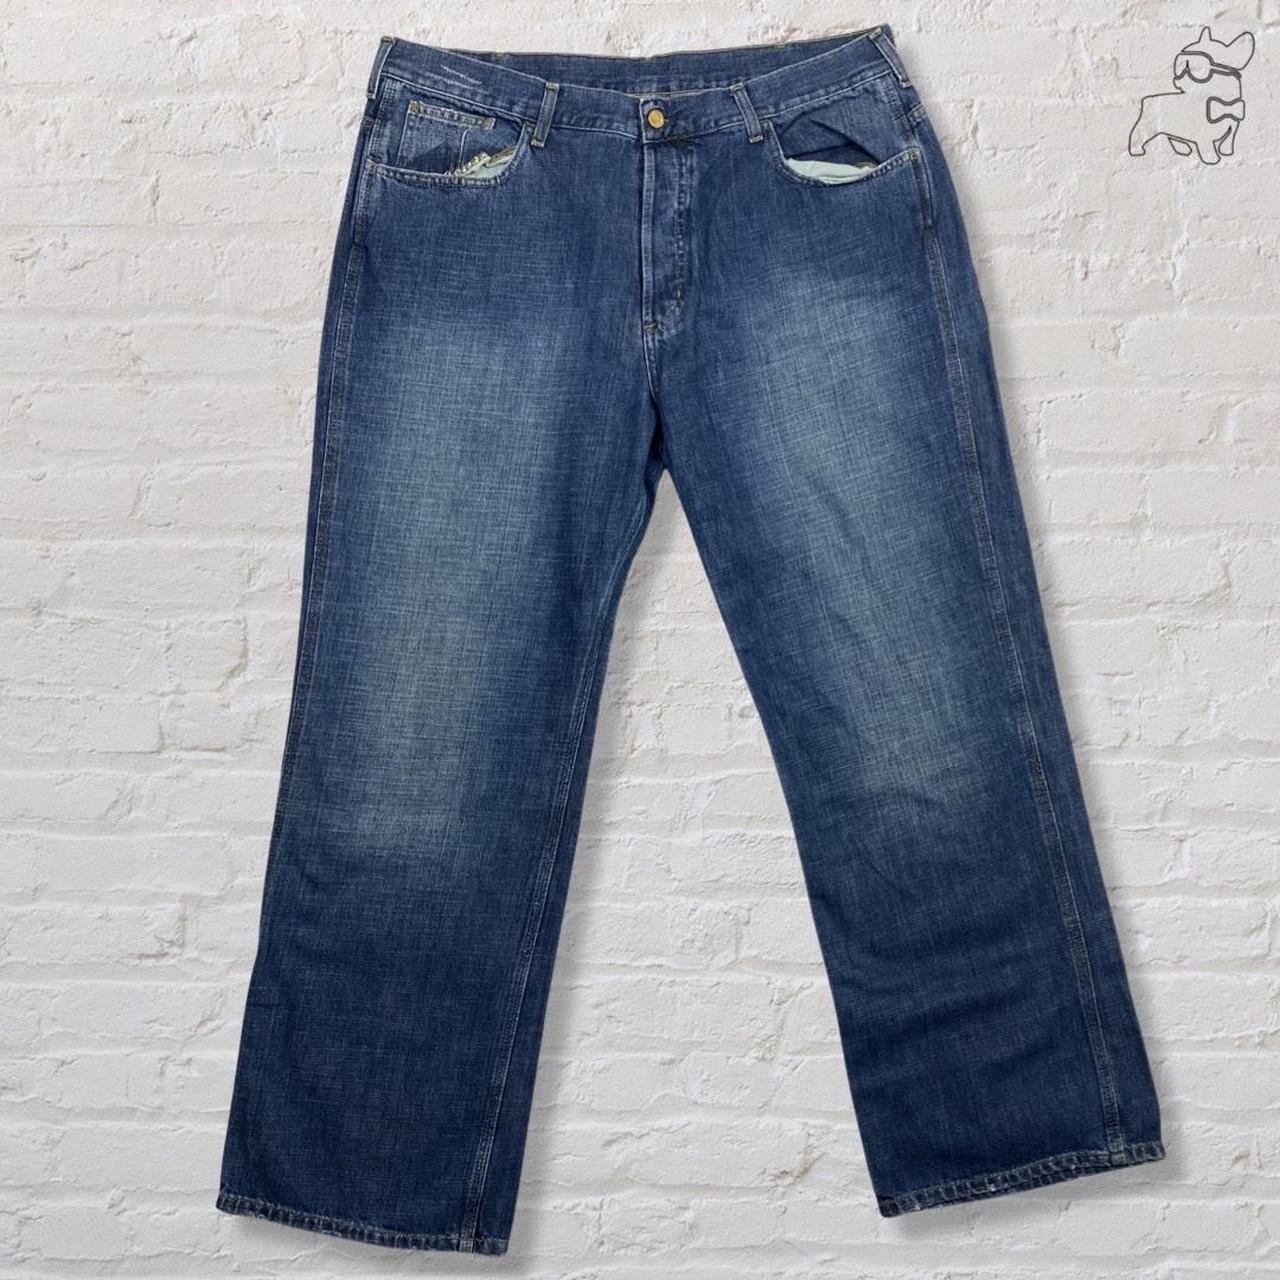 Carhartt Jeans Staff Jeans super baggy high waist... - Depop